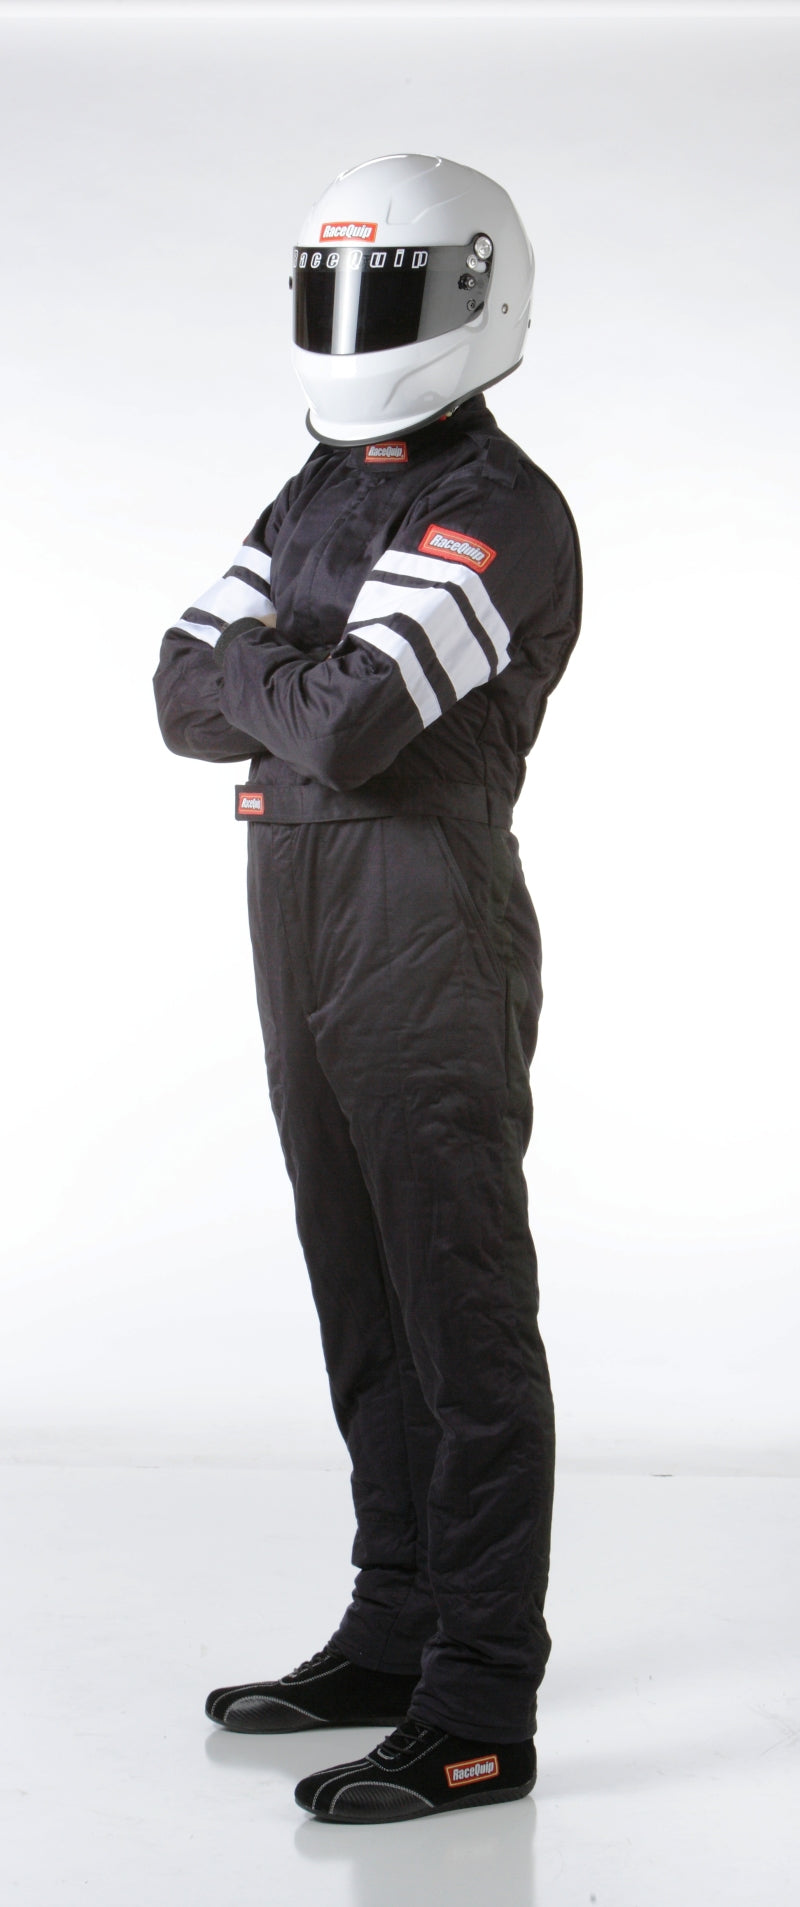 RaceQuip Black SFI-5 Suit - Medium - eliteracefab.com